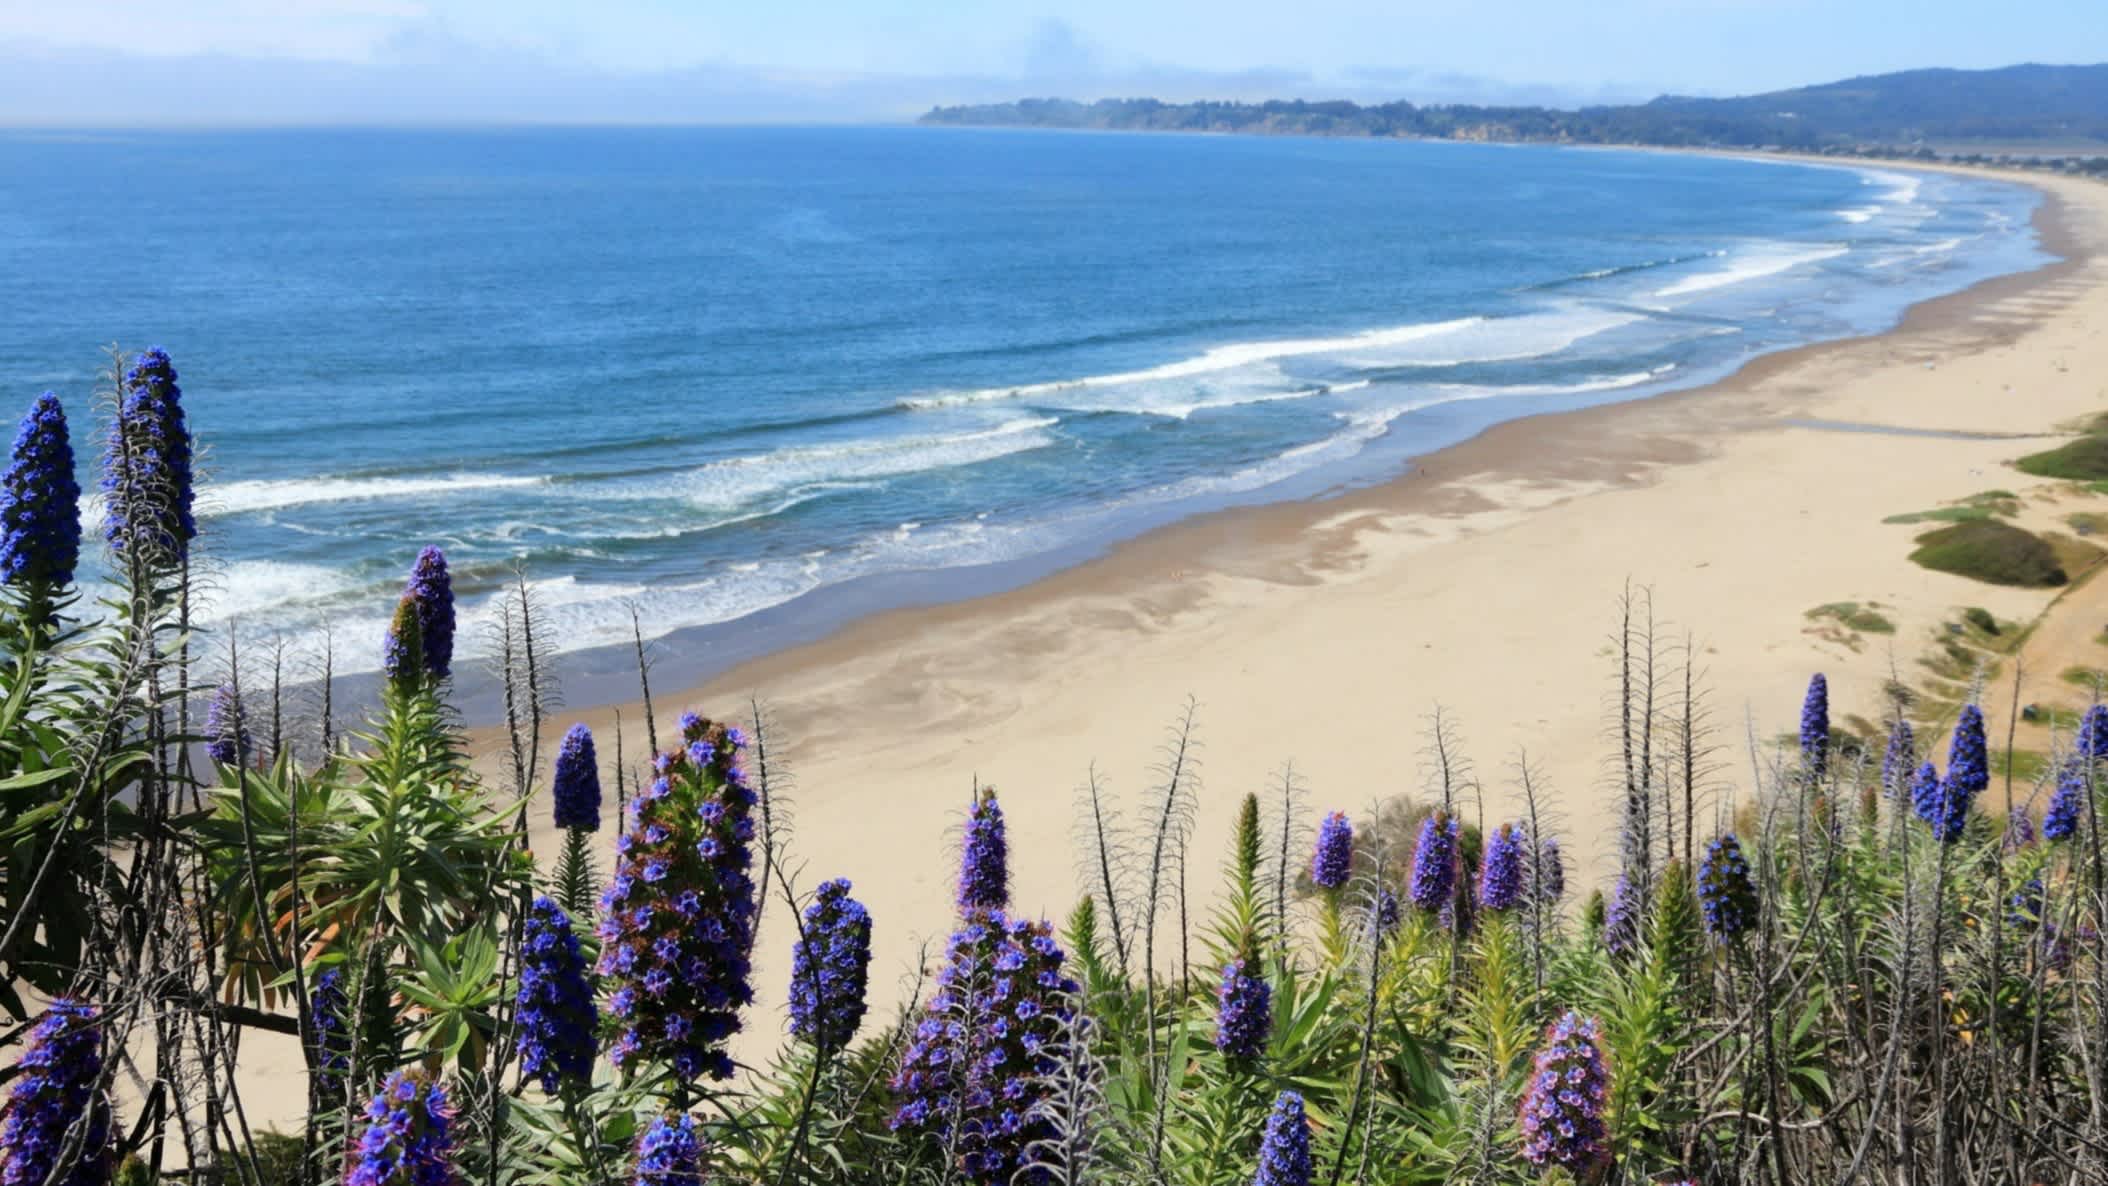 Der Strand Stinson Beach, Marin County, Kalifornien, USA mit Lianen Blumen und Vegetation im Vordergrund und Weitblick über die Bucht und das Meer.